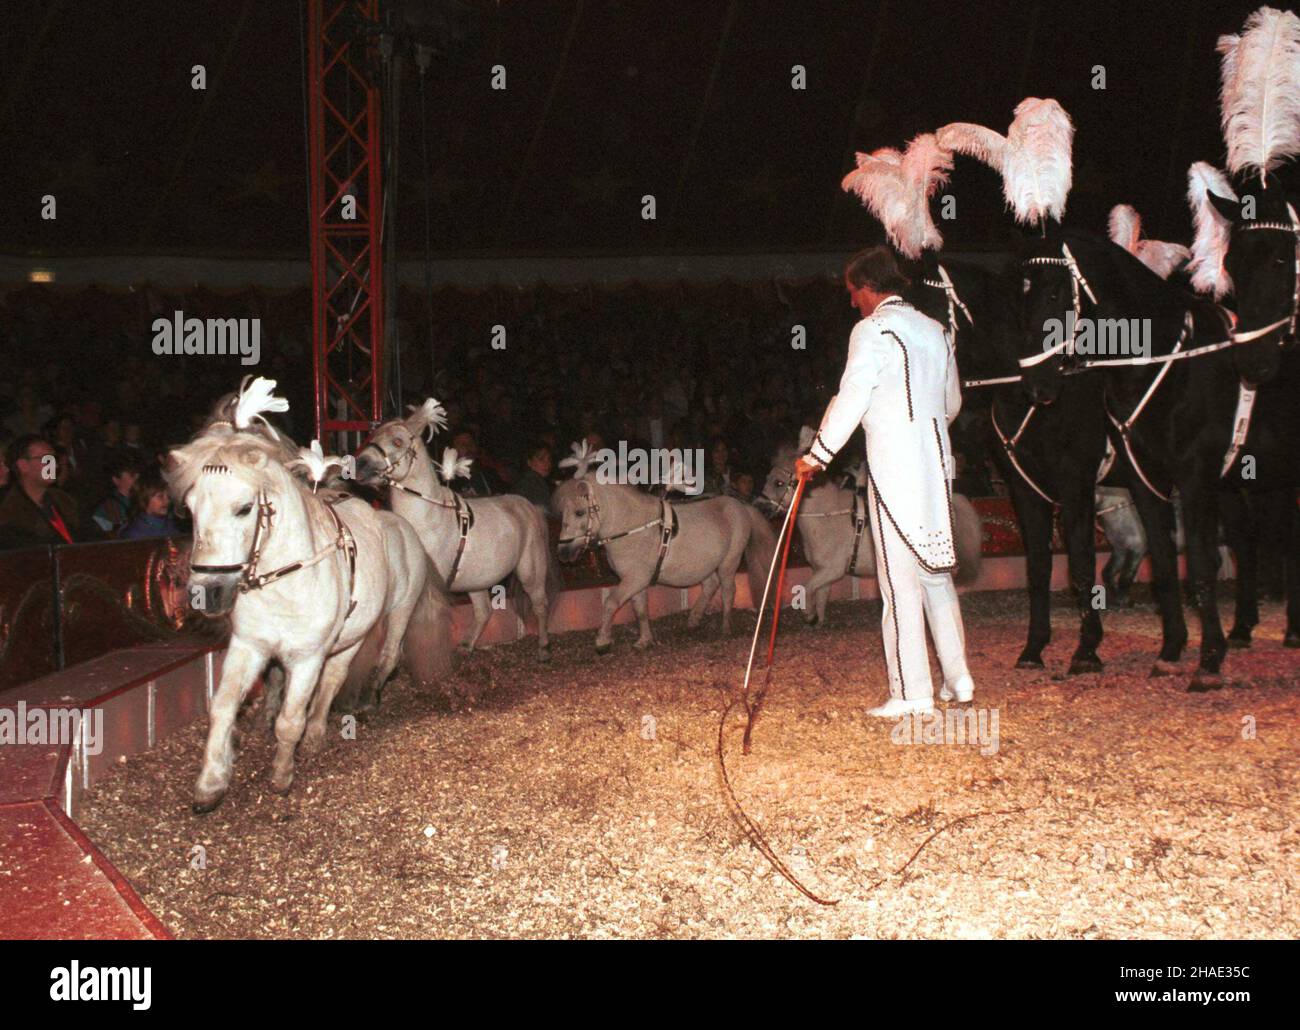 Warszawa, 27.09.1995. Treser trenuje konie w cyrku Merano w Warszawie. (kkk) PAP/Piotr Walczak Stock Photo